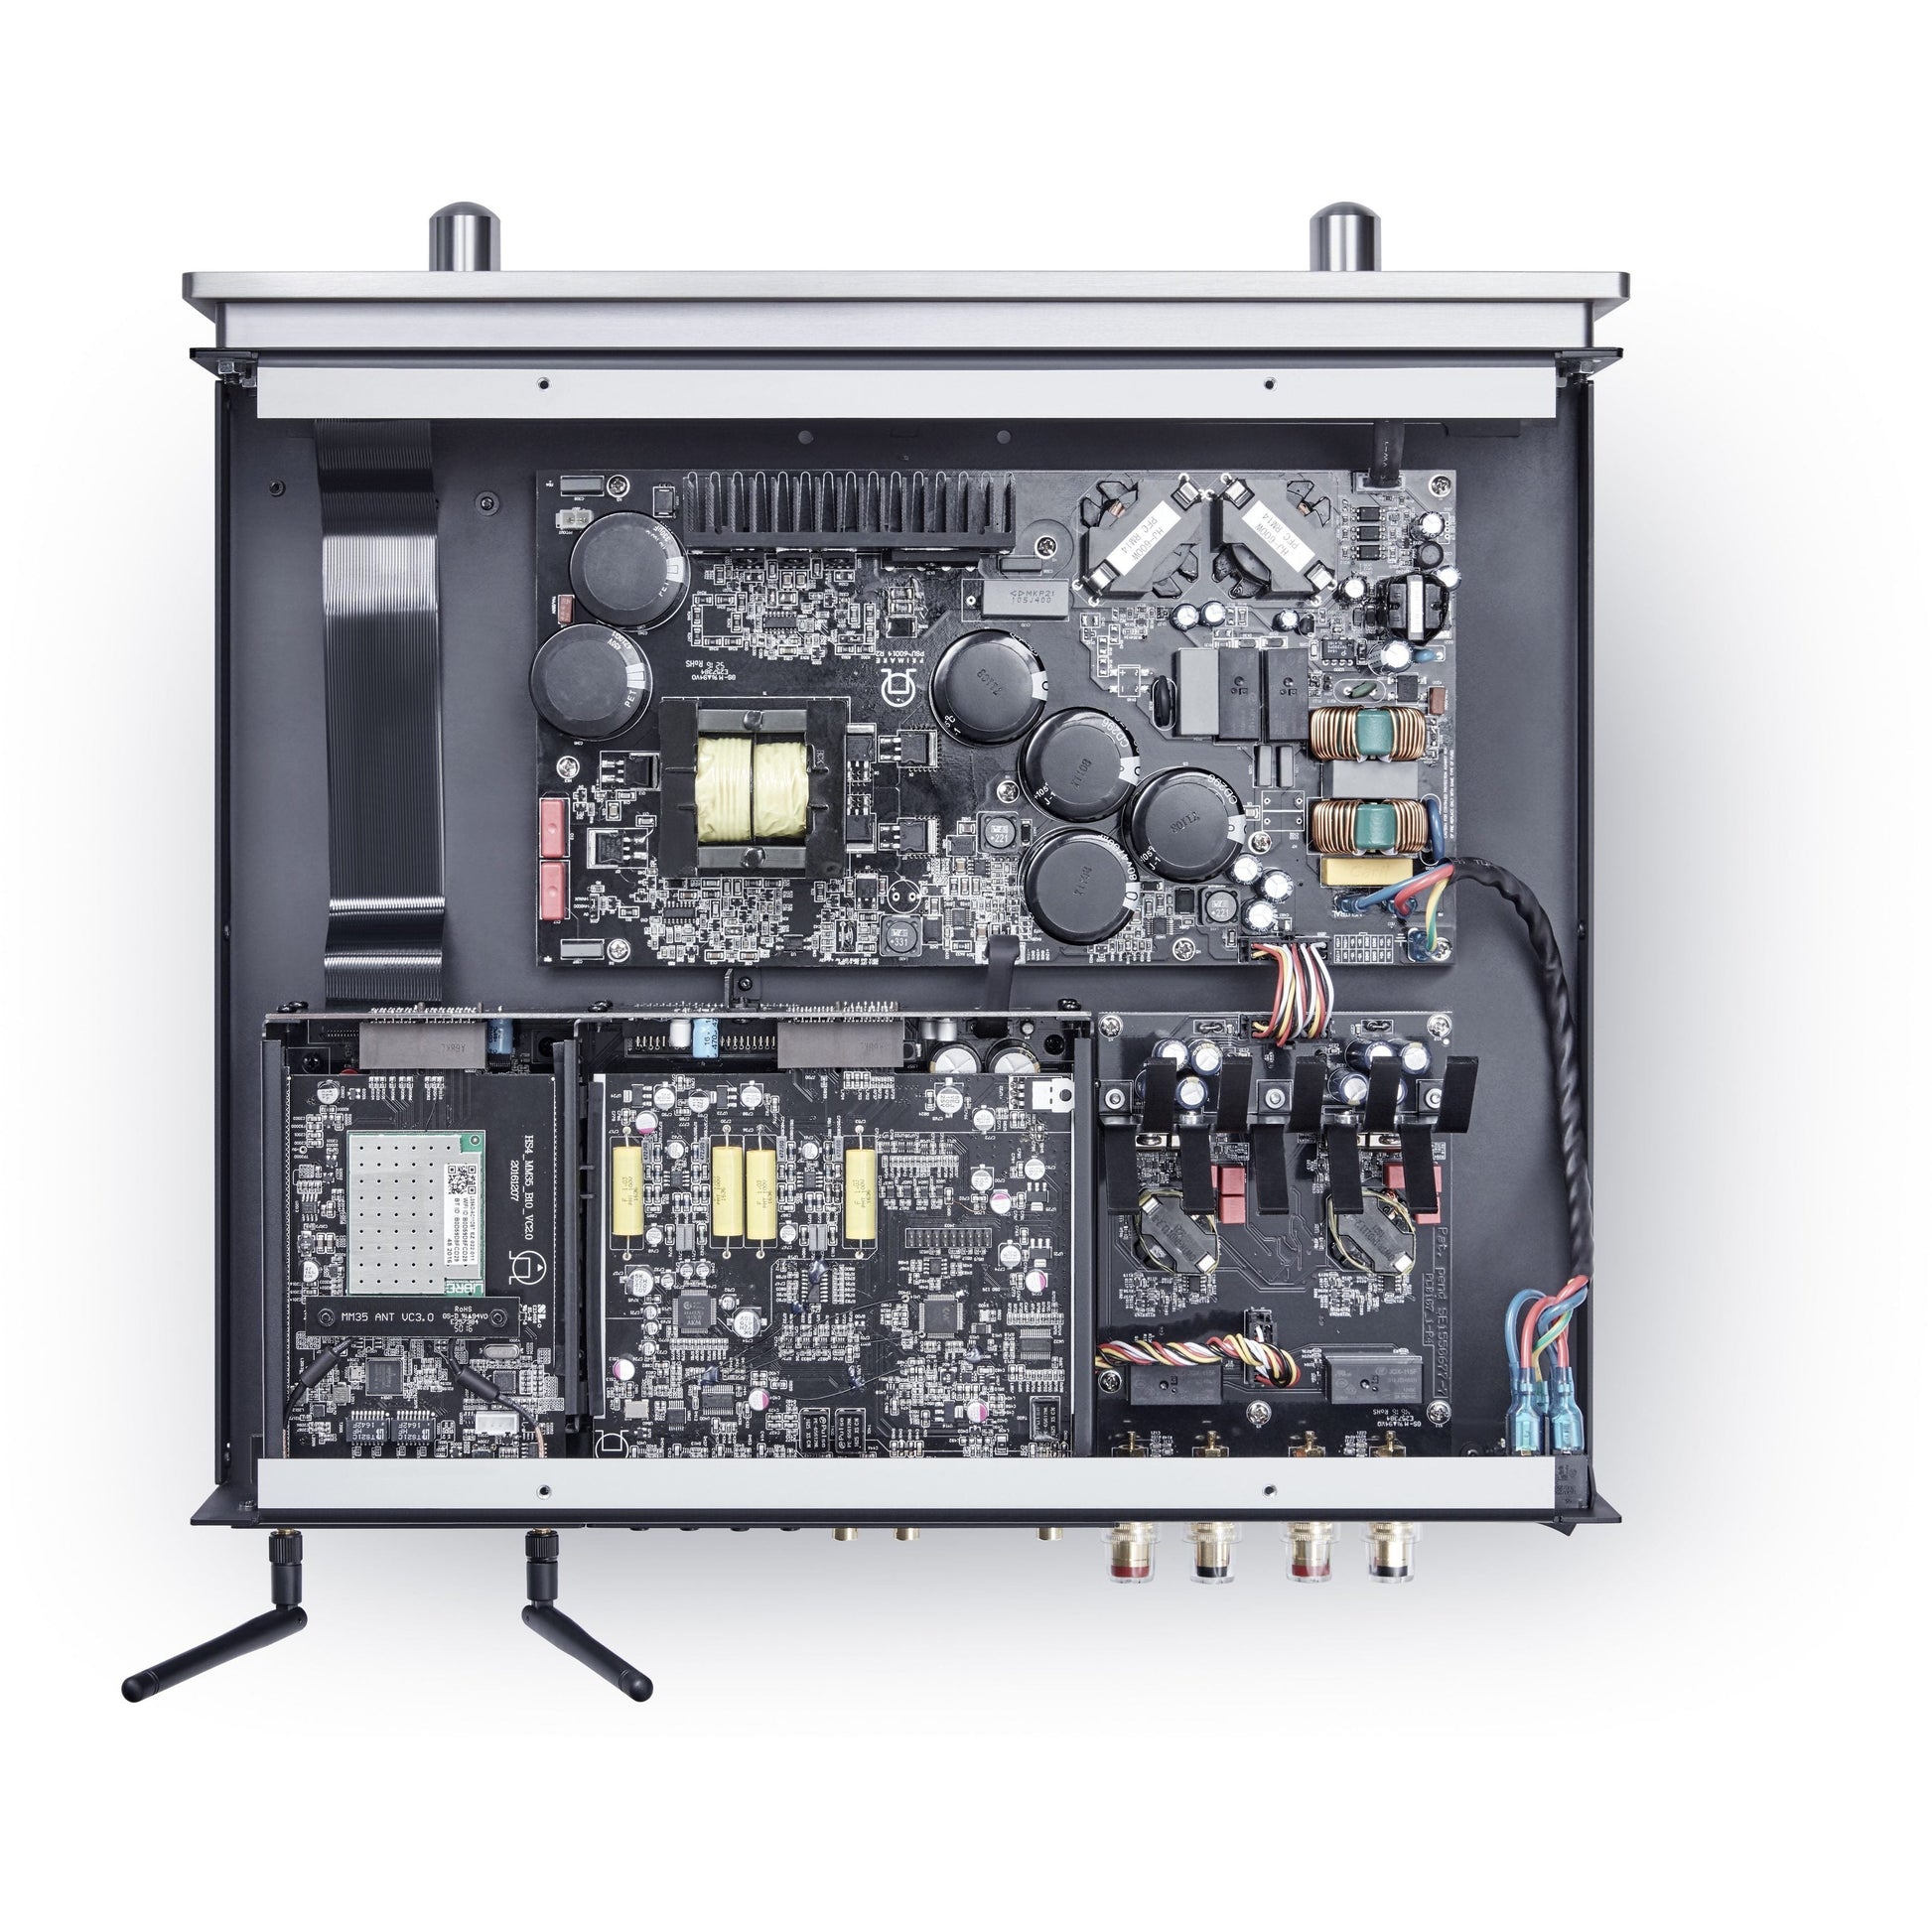 Primare i35 Prisma Integrated Amplifier - Kronos AV